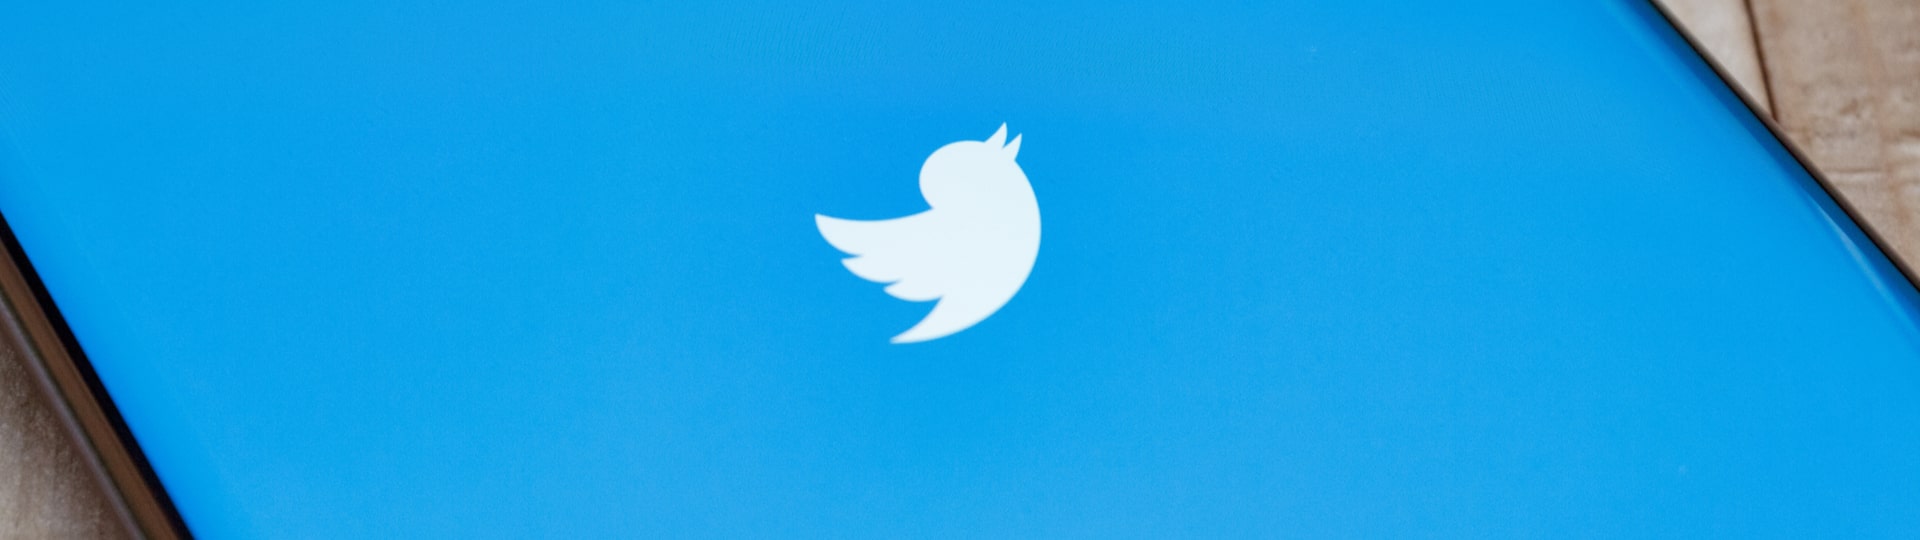 Twitter čekají změny ve vedení i v obsahu